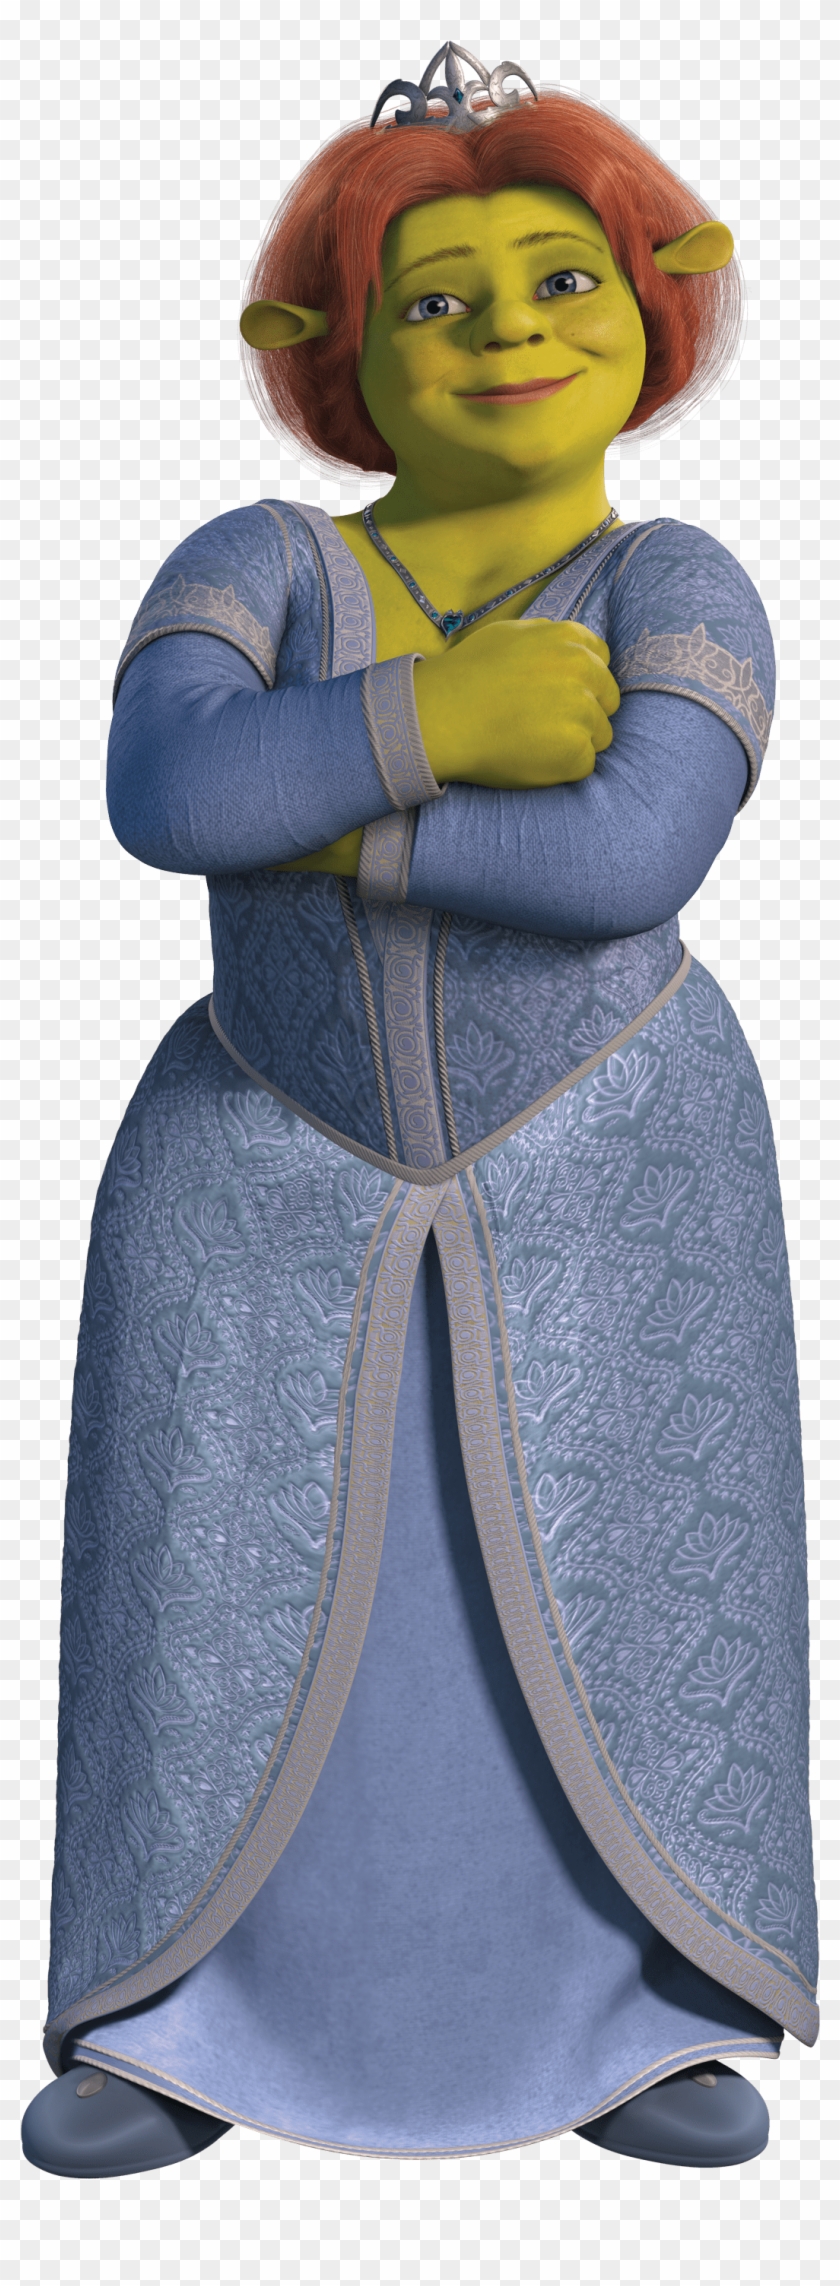 Transparent Princess Fiona Shrek - Shrek Princess Fiona Png Clipart